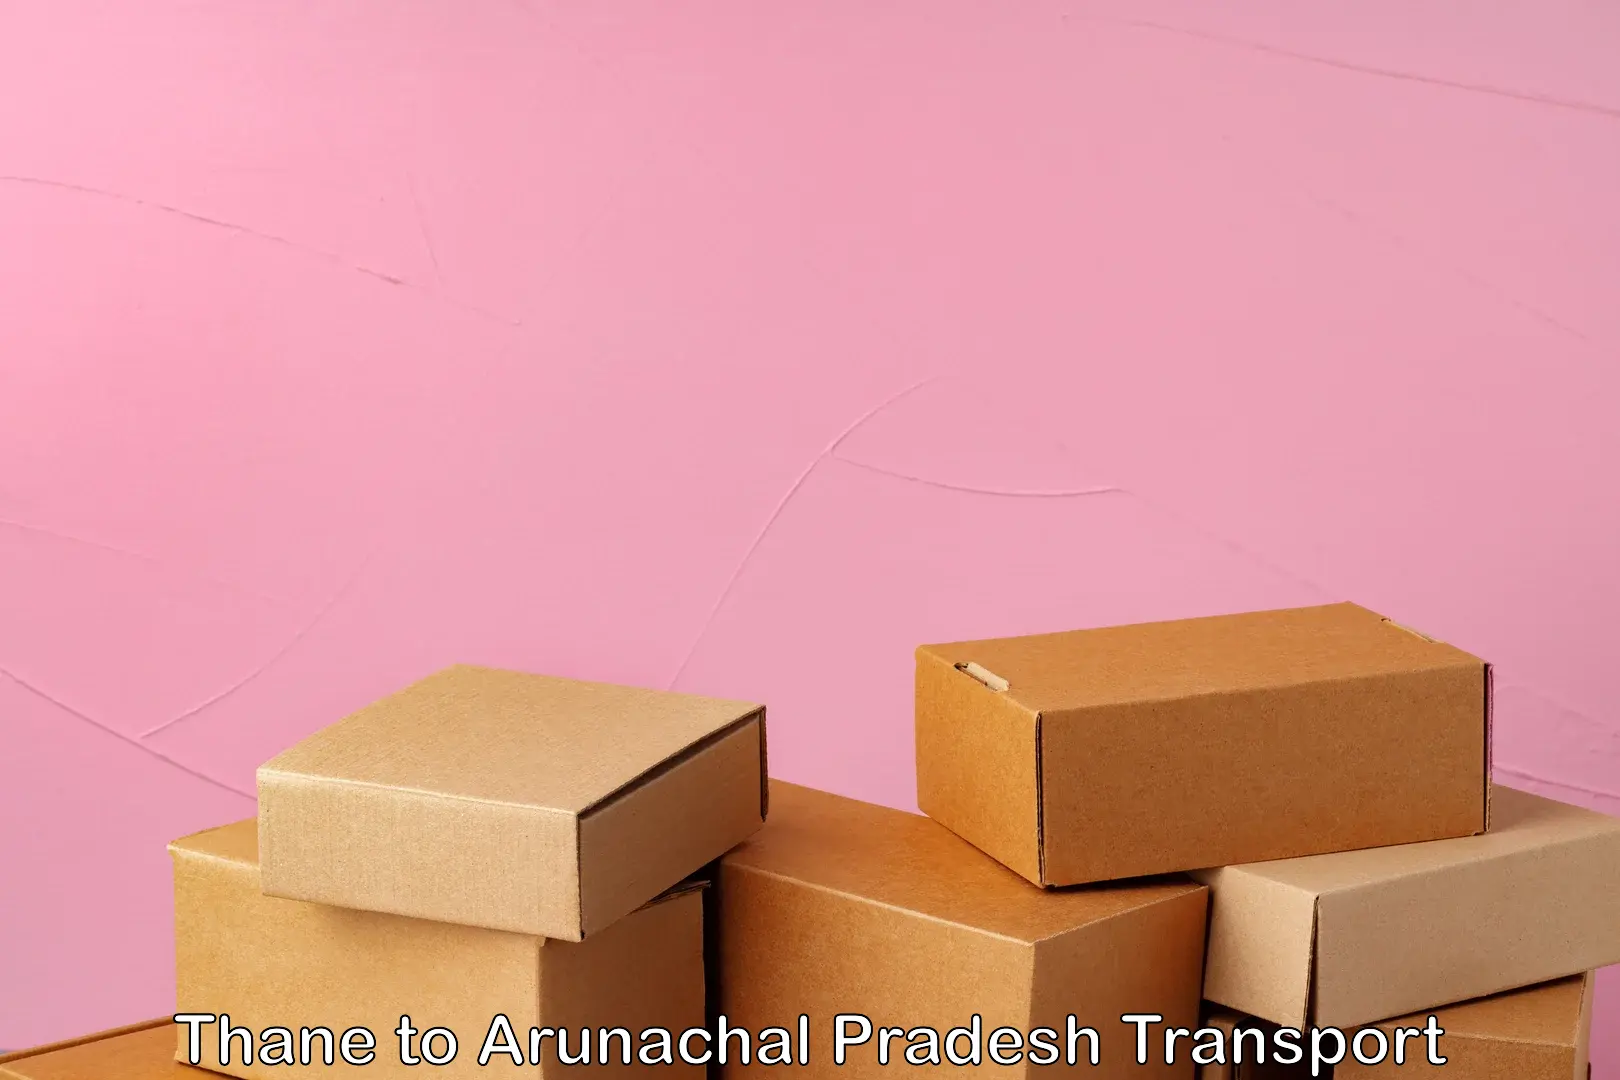 Nearest transport service Thane to Arunachal Pradesh